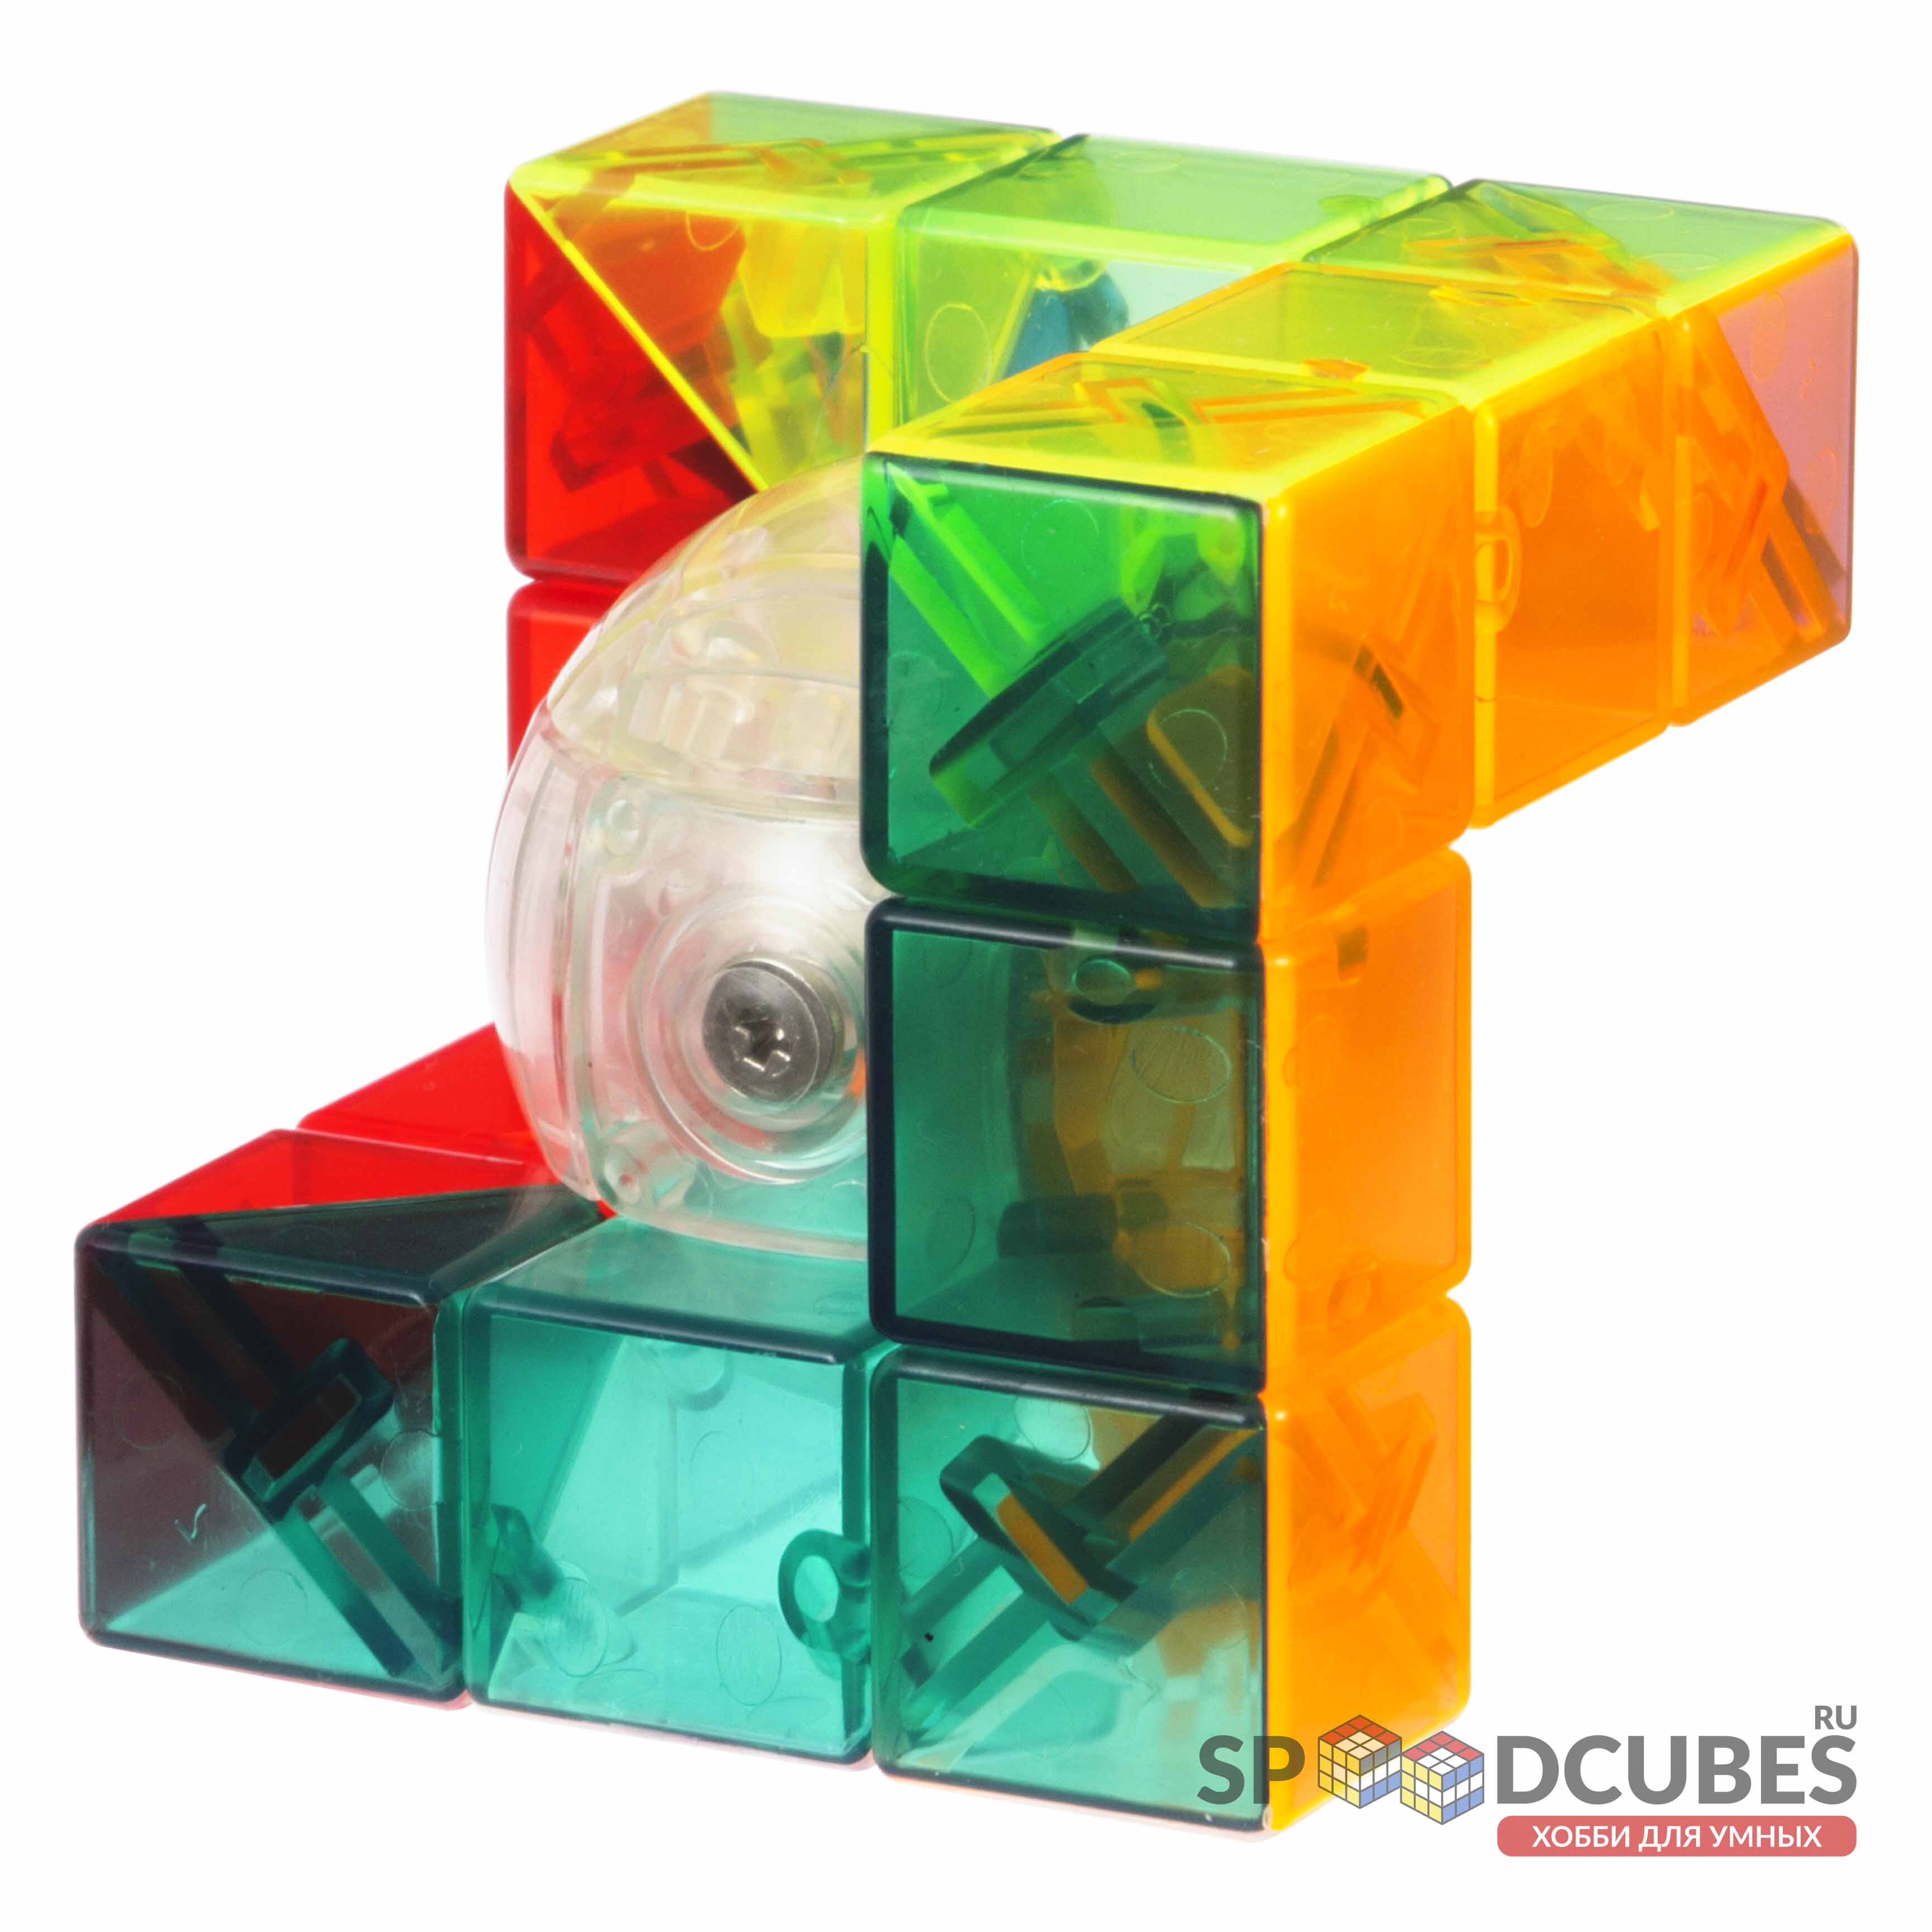 MoYu Cubing Classroom Geo Cube A